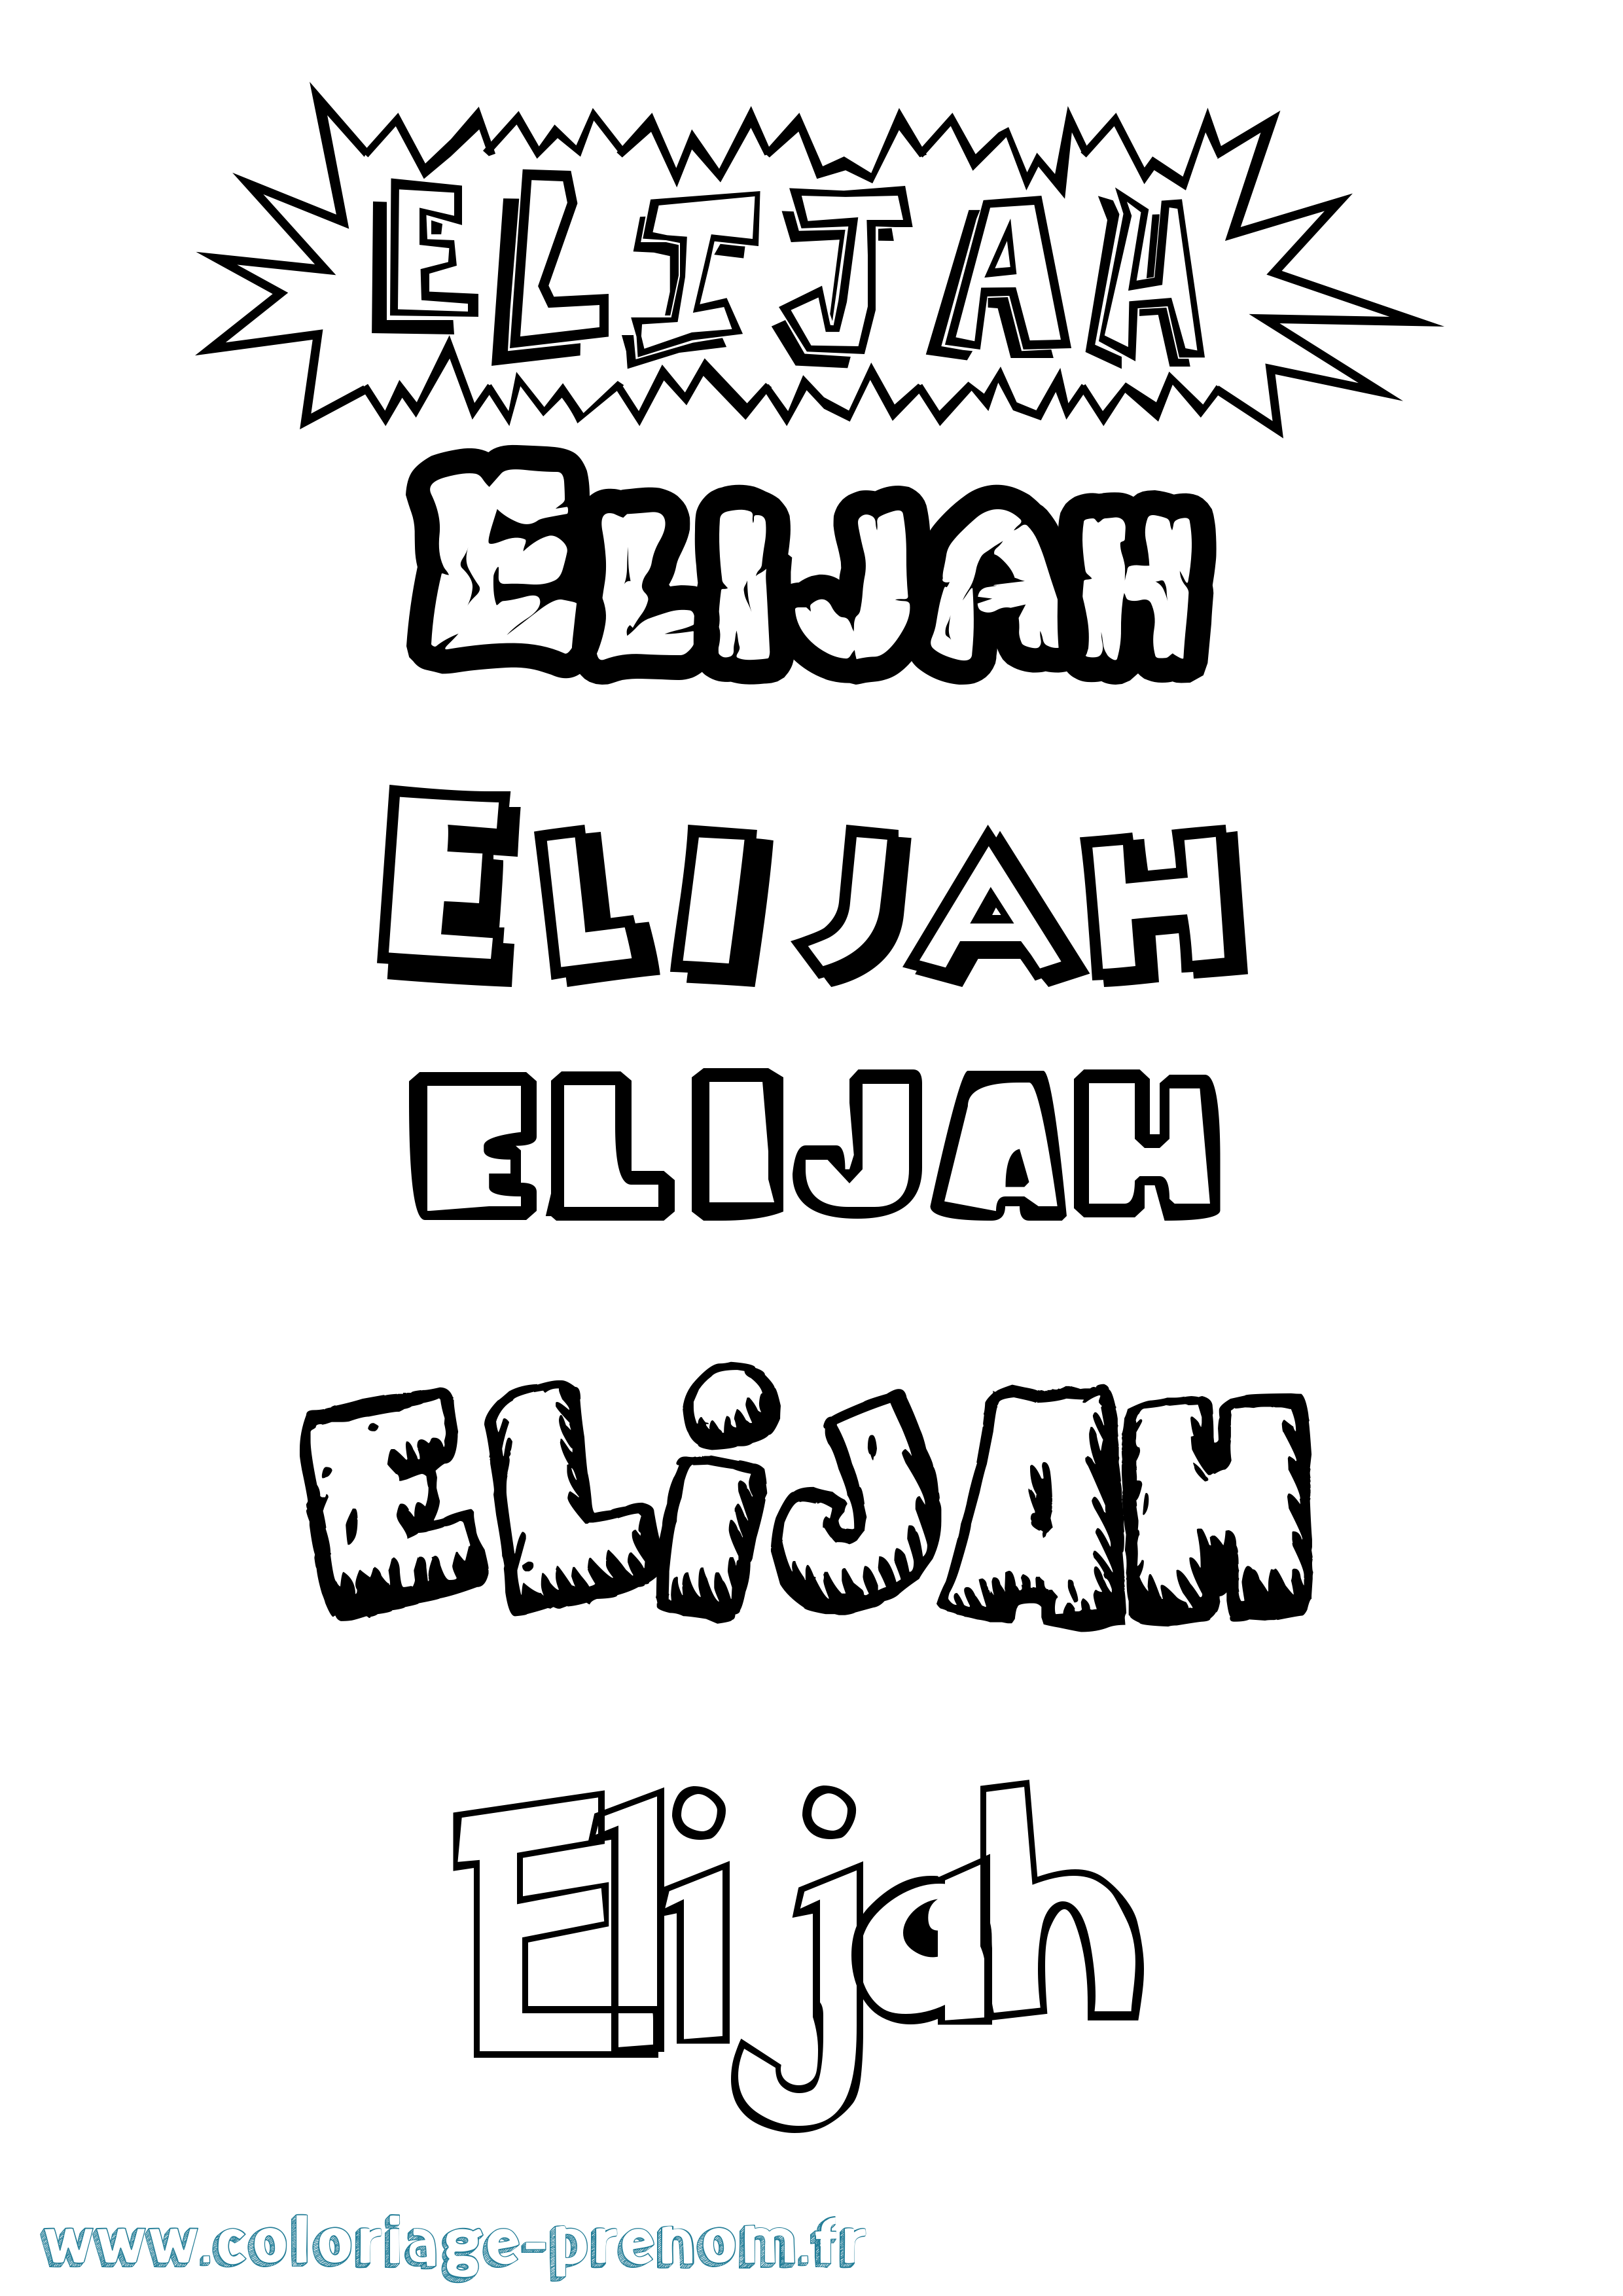 Coloriage prénom Elijah